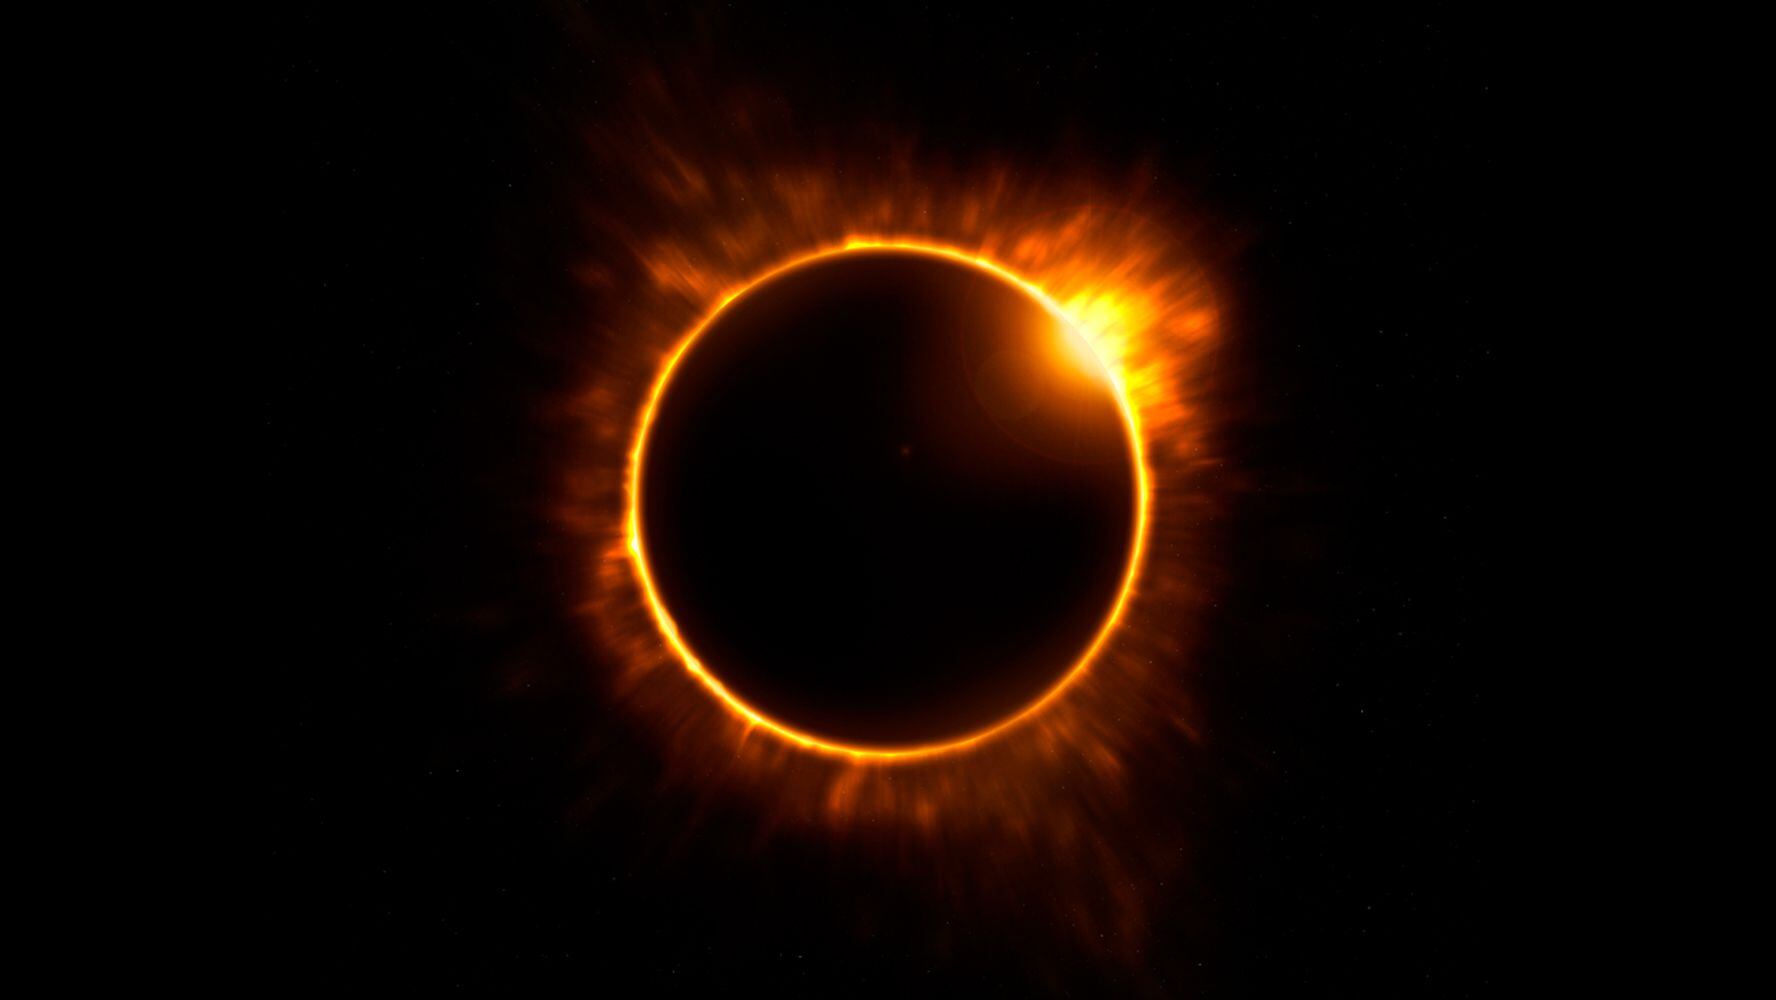 En México, el eclipse solar se verá mejor en estados del norte del país. (Shutterstock)